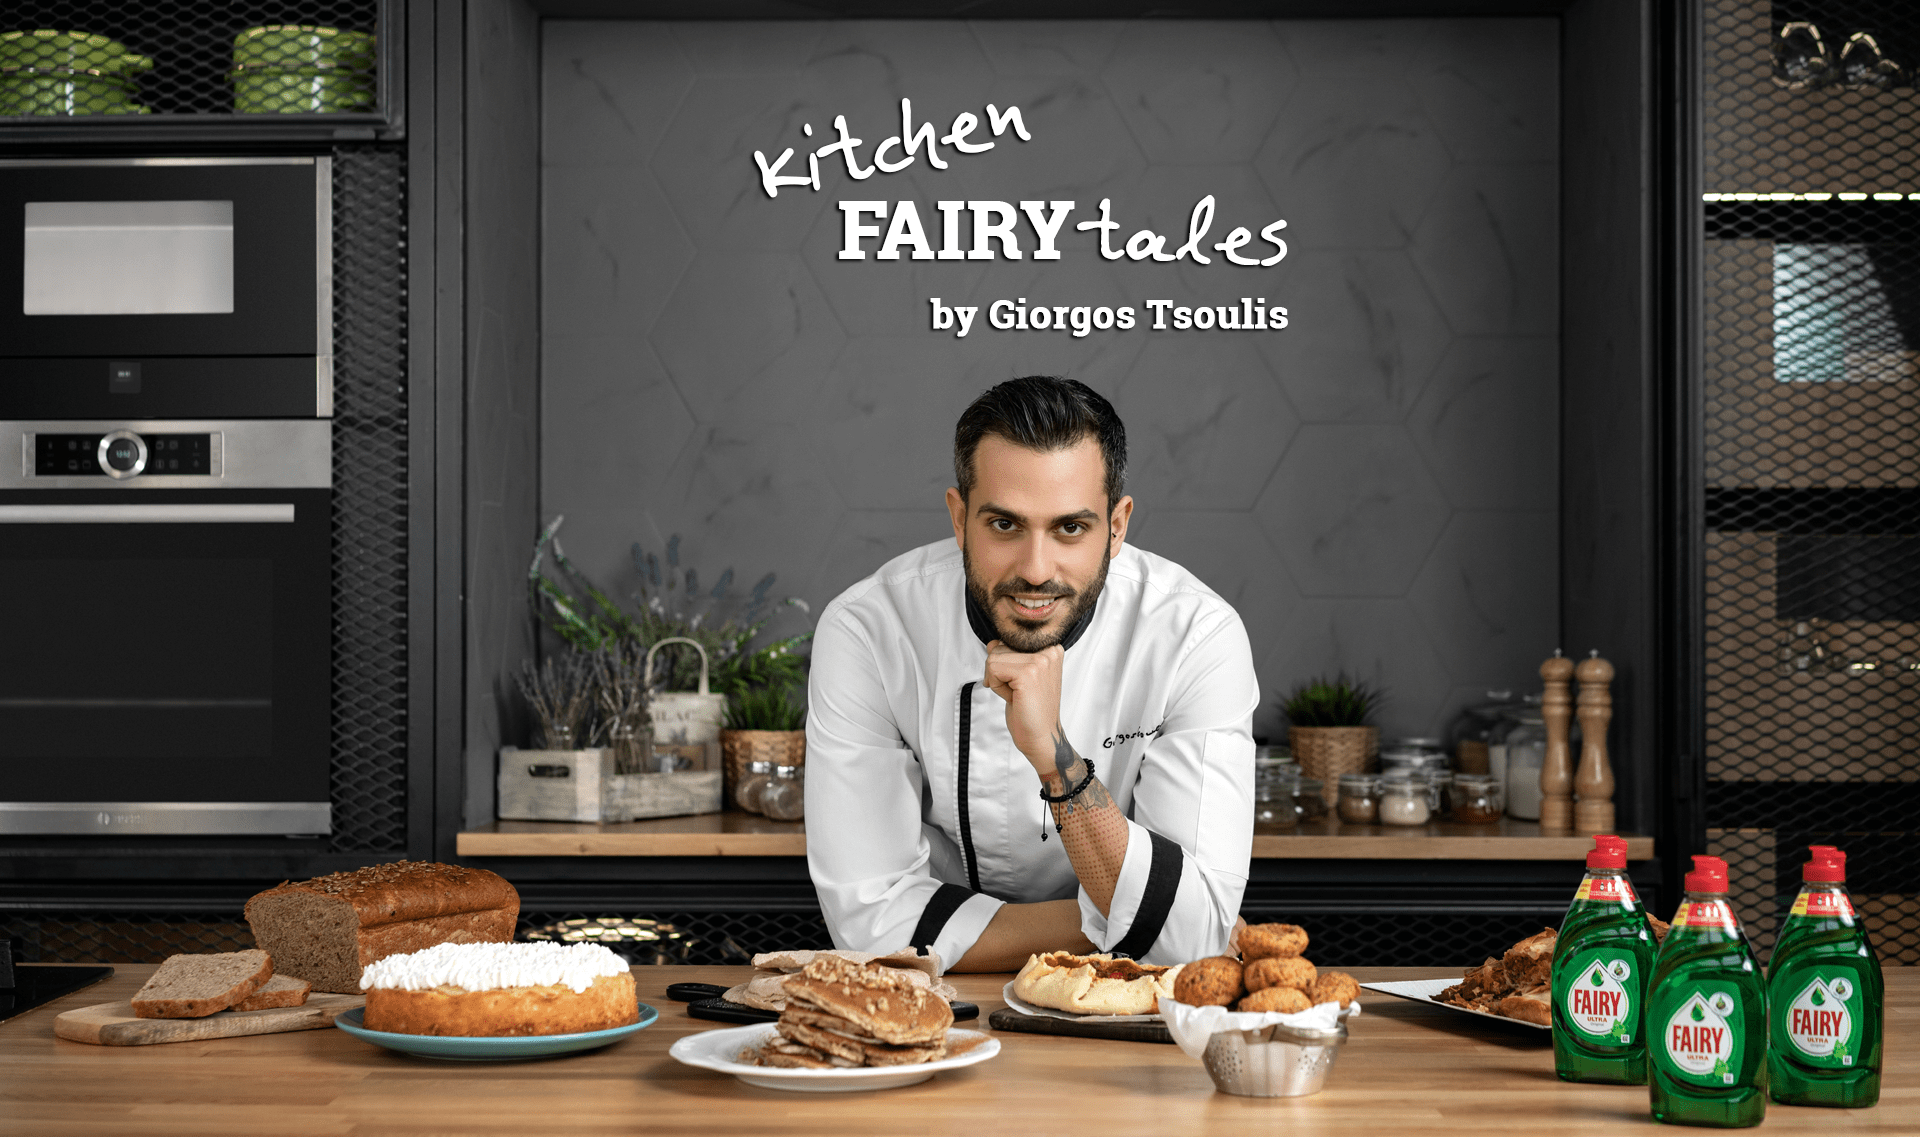 Kitchen FAIRY tales